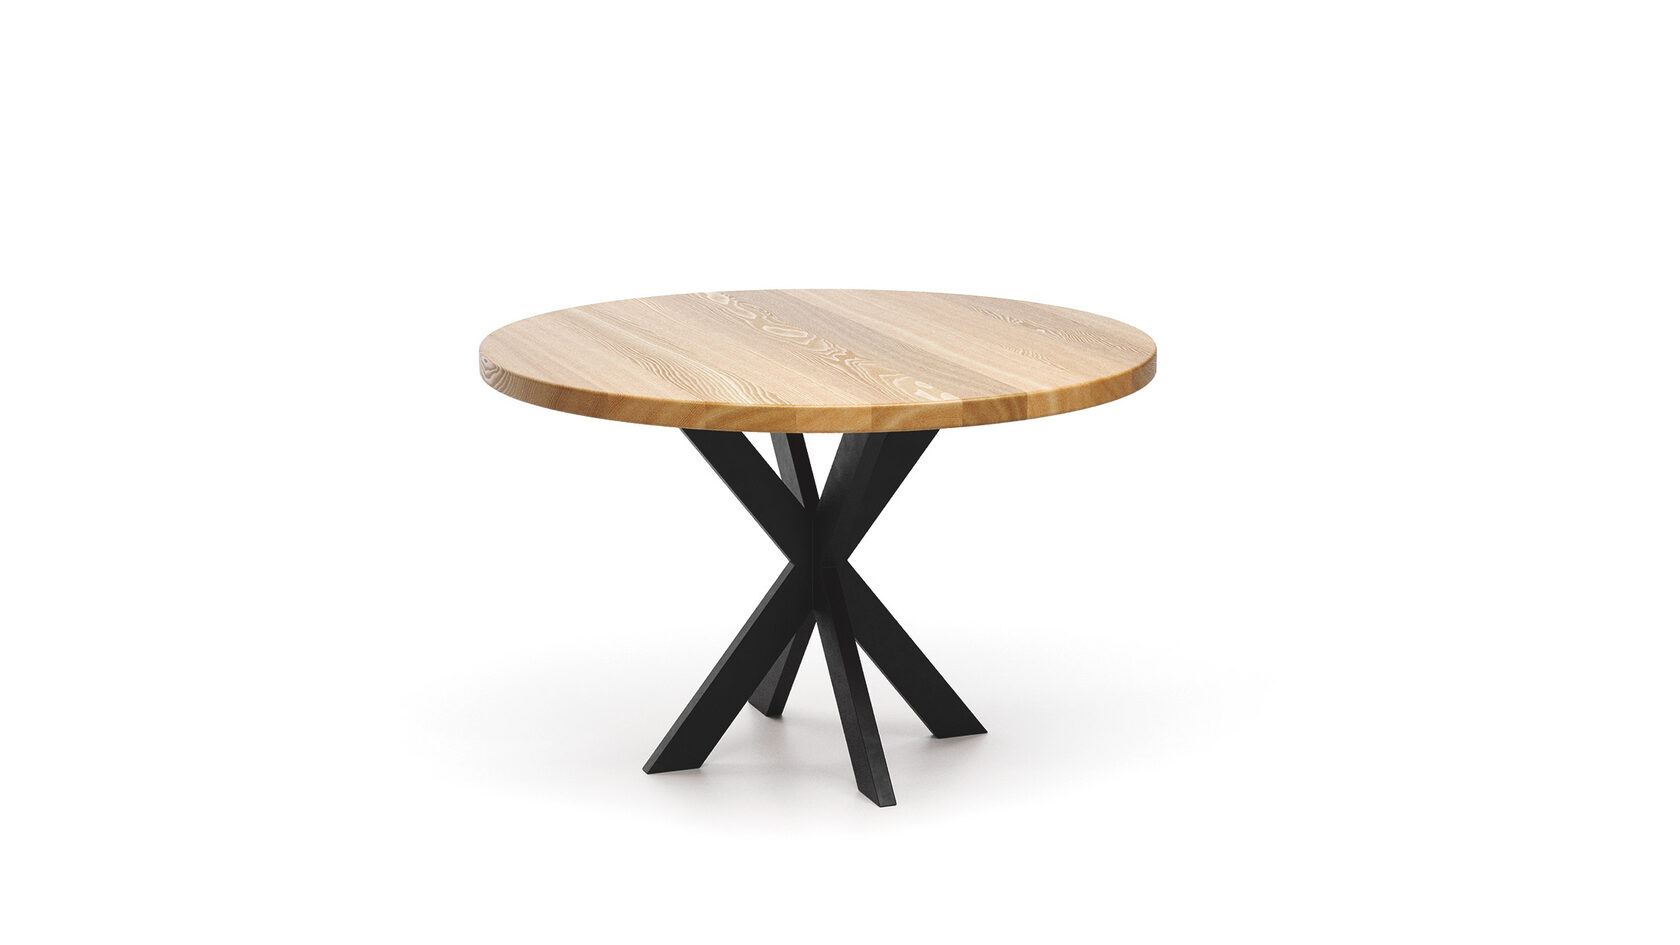 Современный стол Герди в стиле лофт ▪ модель loftab017 ▪ столешница из массива дерева ▪ вид сверху